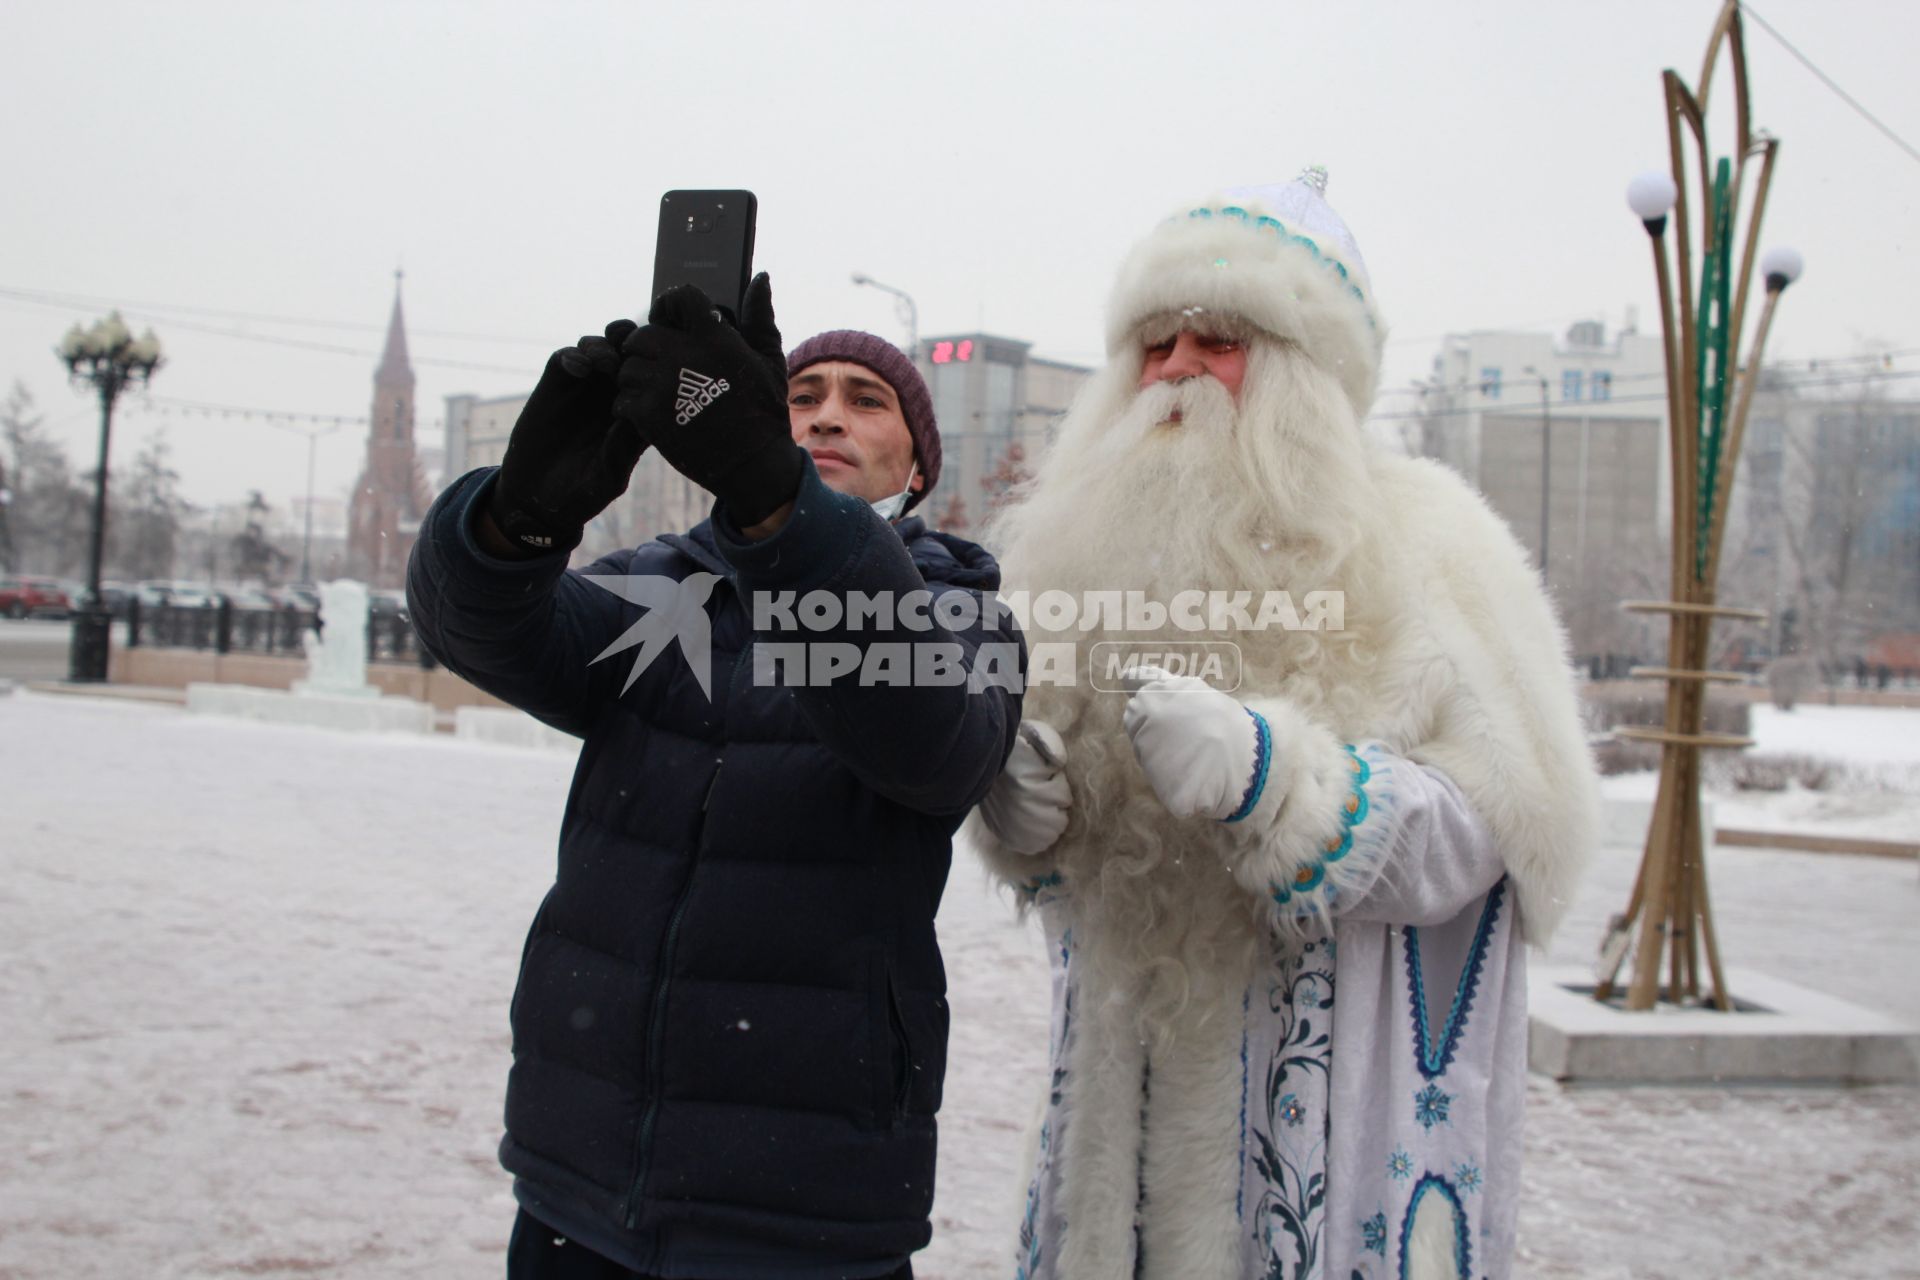 Иркутск. Байкальский Дед Мороз на одной из улиц города.